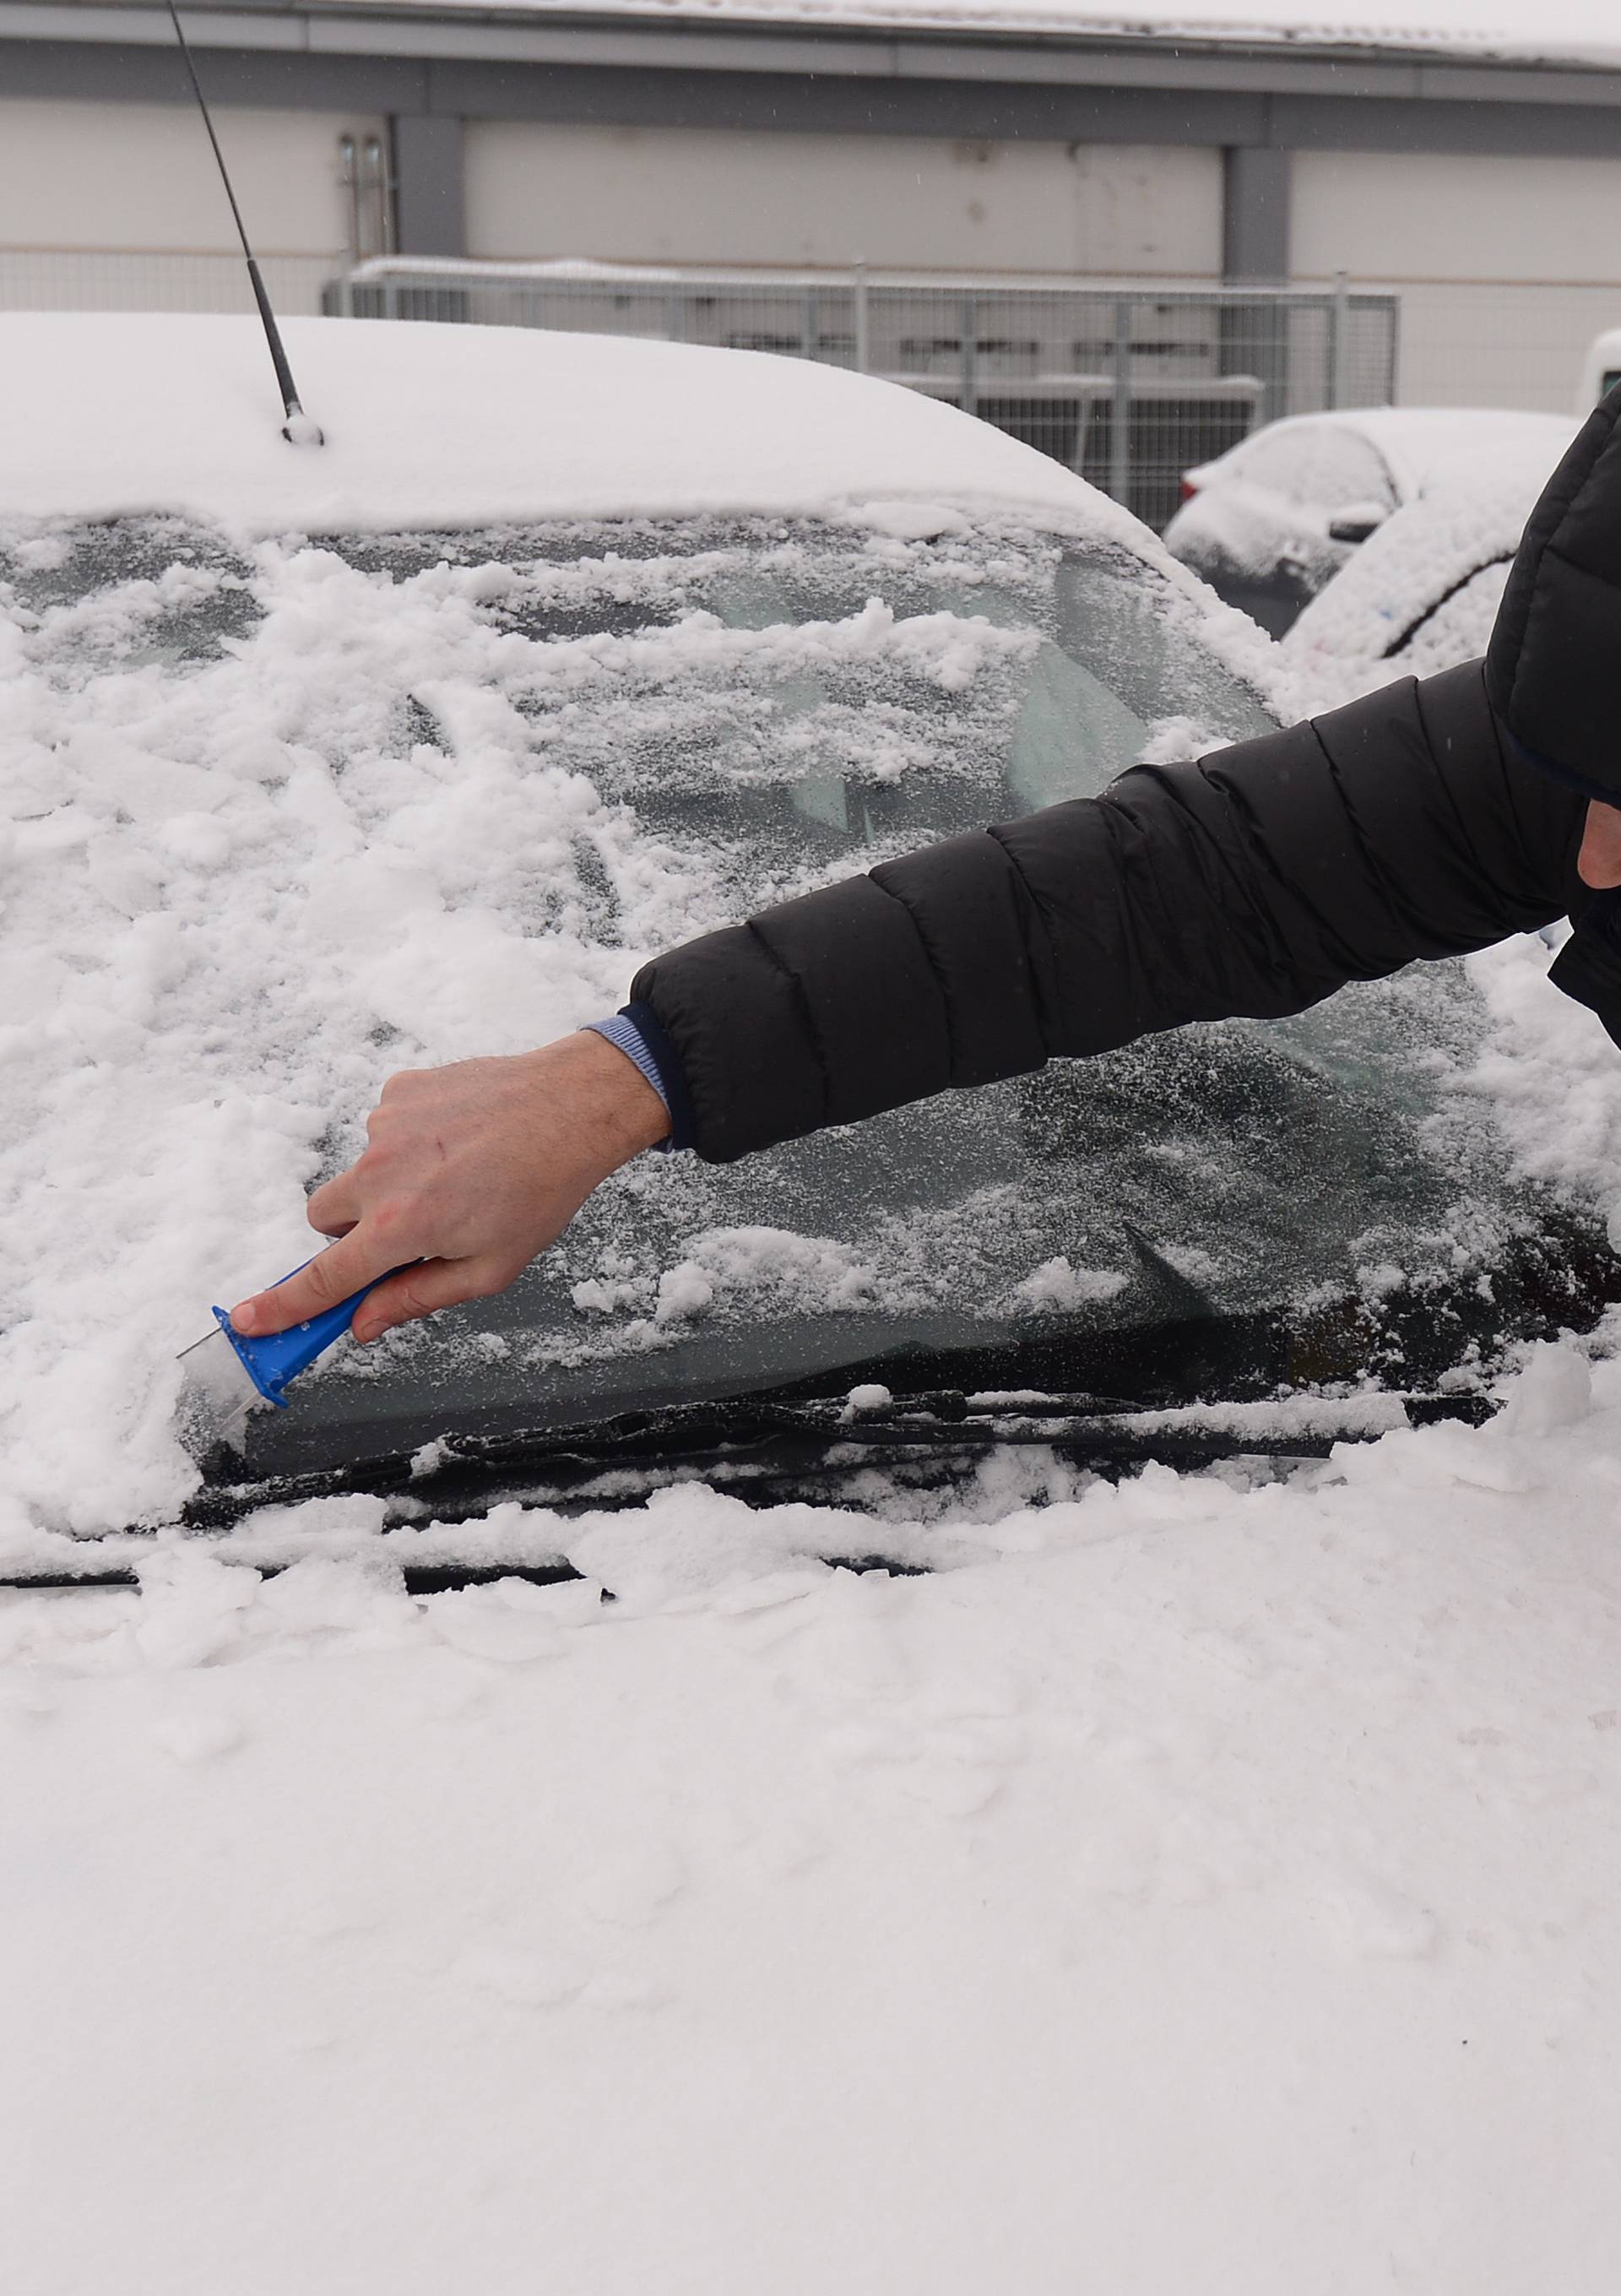 Karton, čarape i trikovi koji će pomoći u čišćenju leda s auta